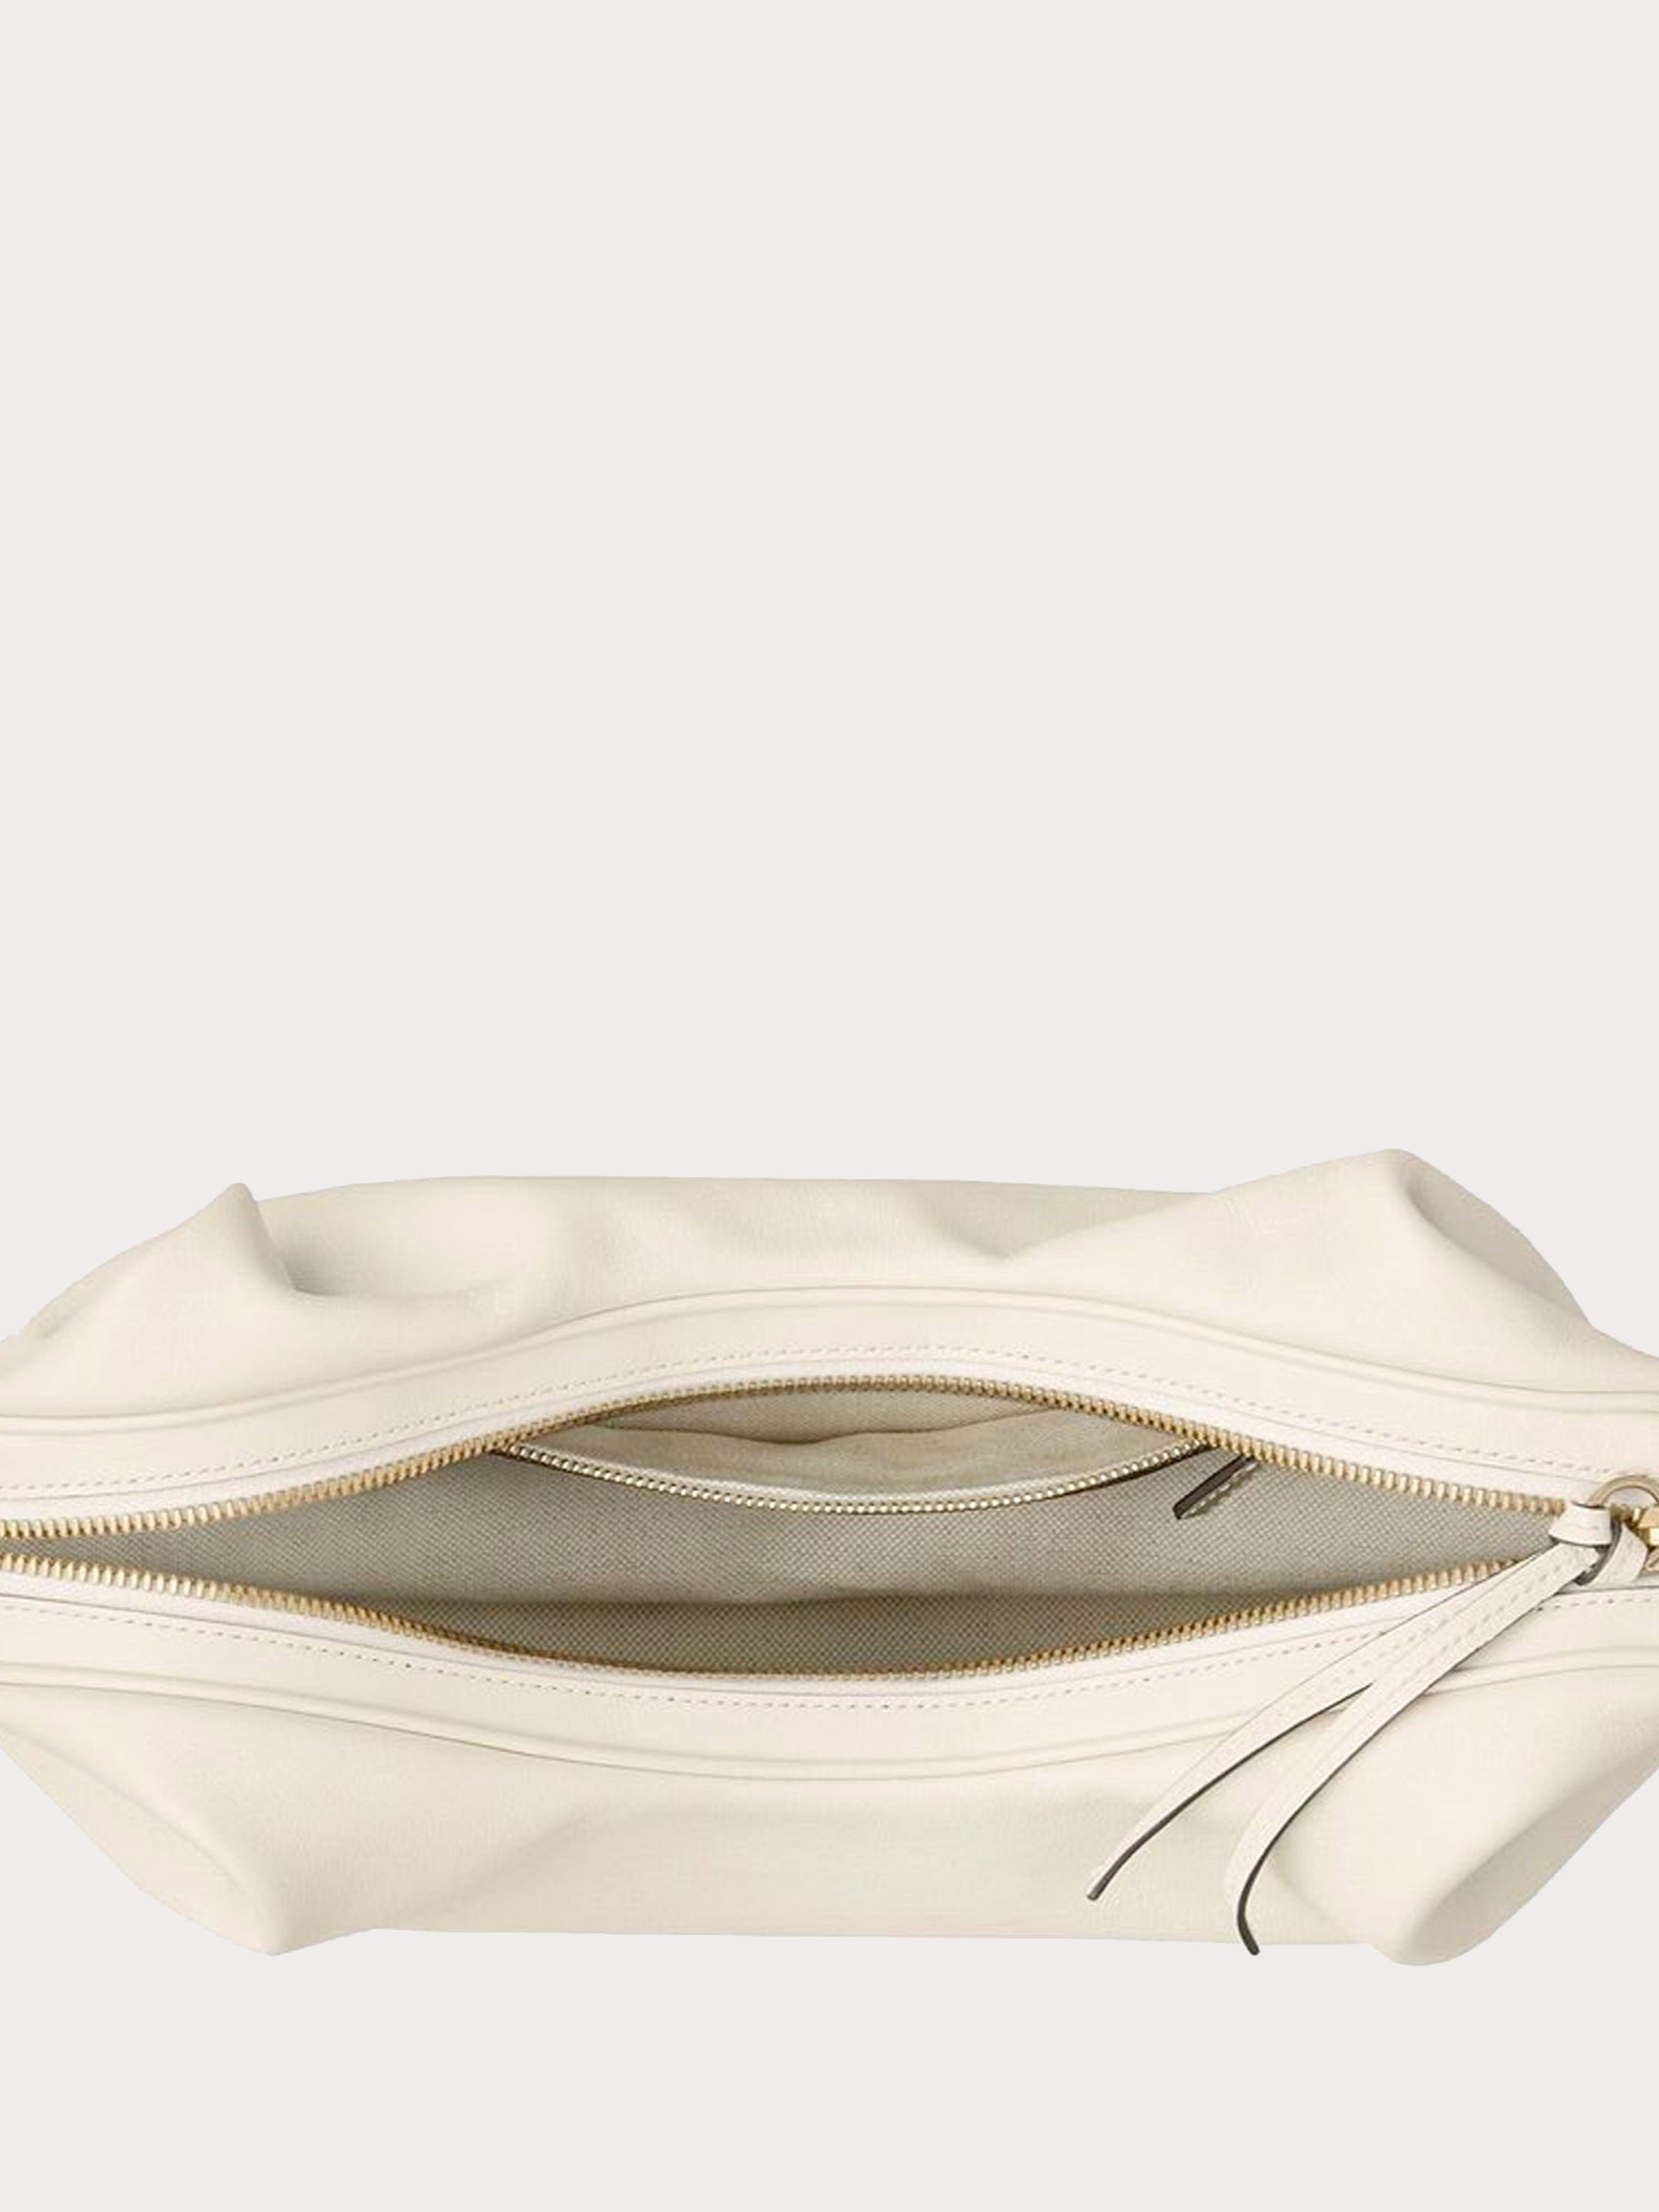 Large Gucci Attache bag